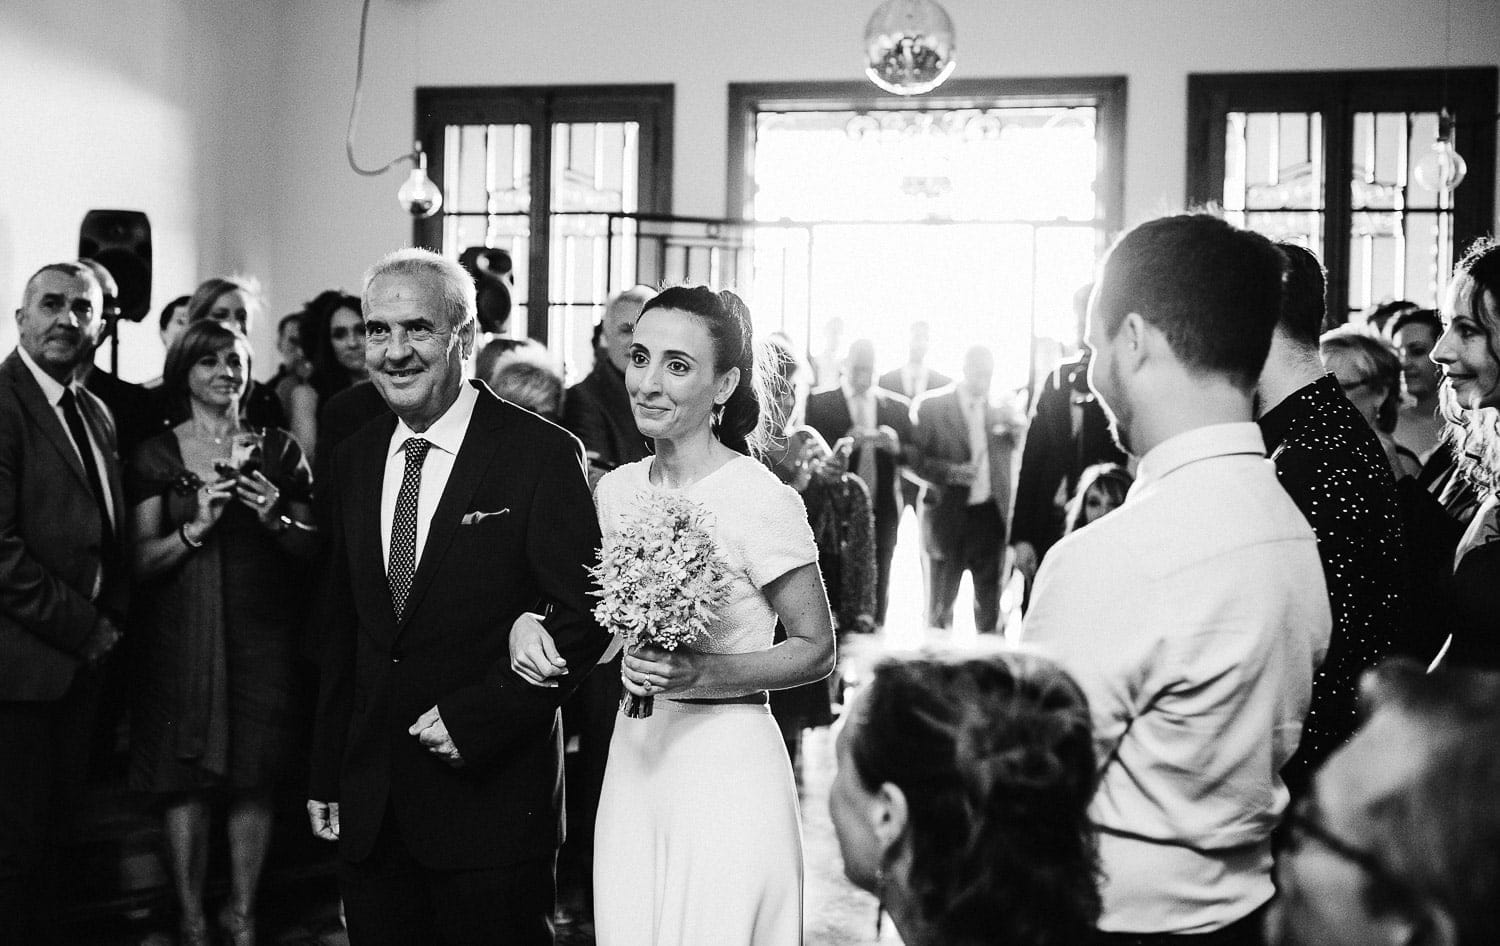 fotos boda natural sin posados barcelona